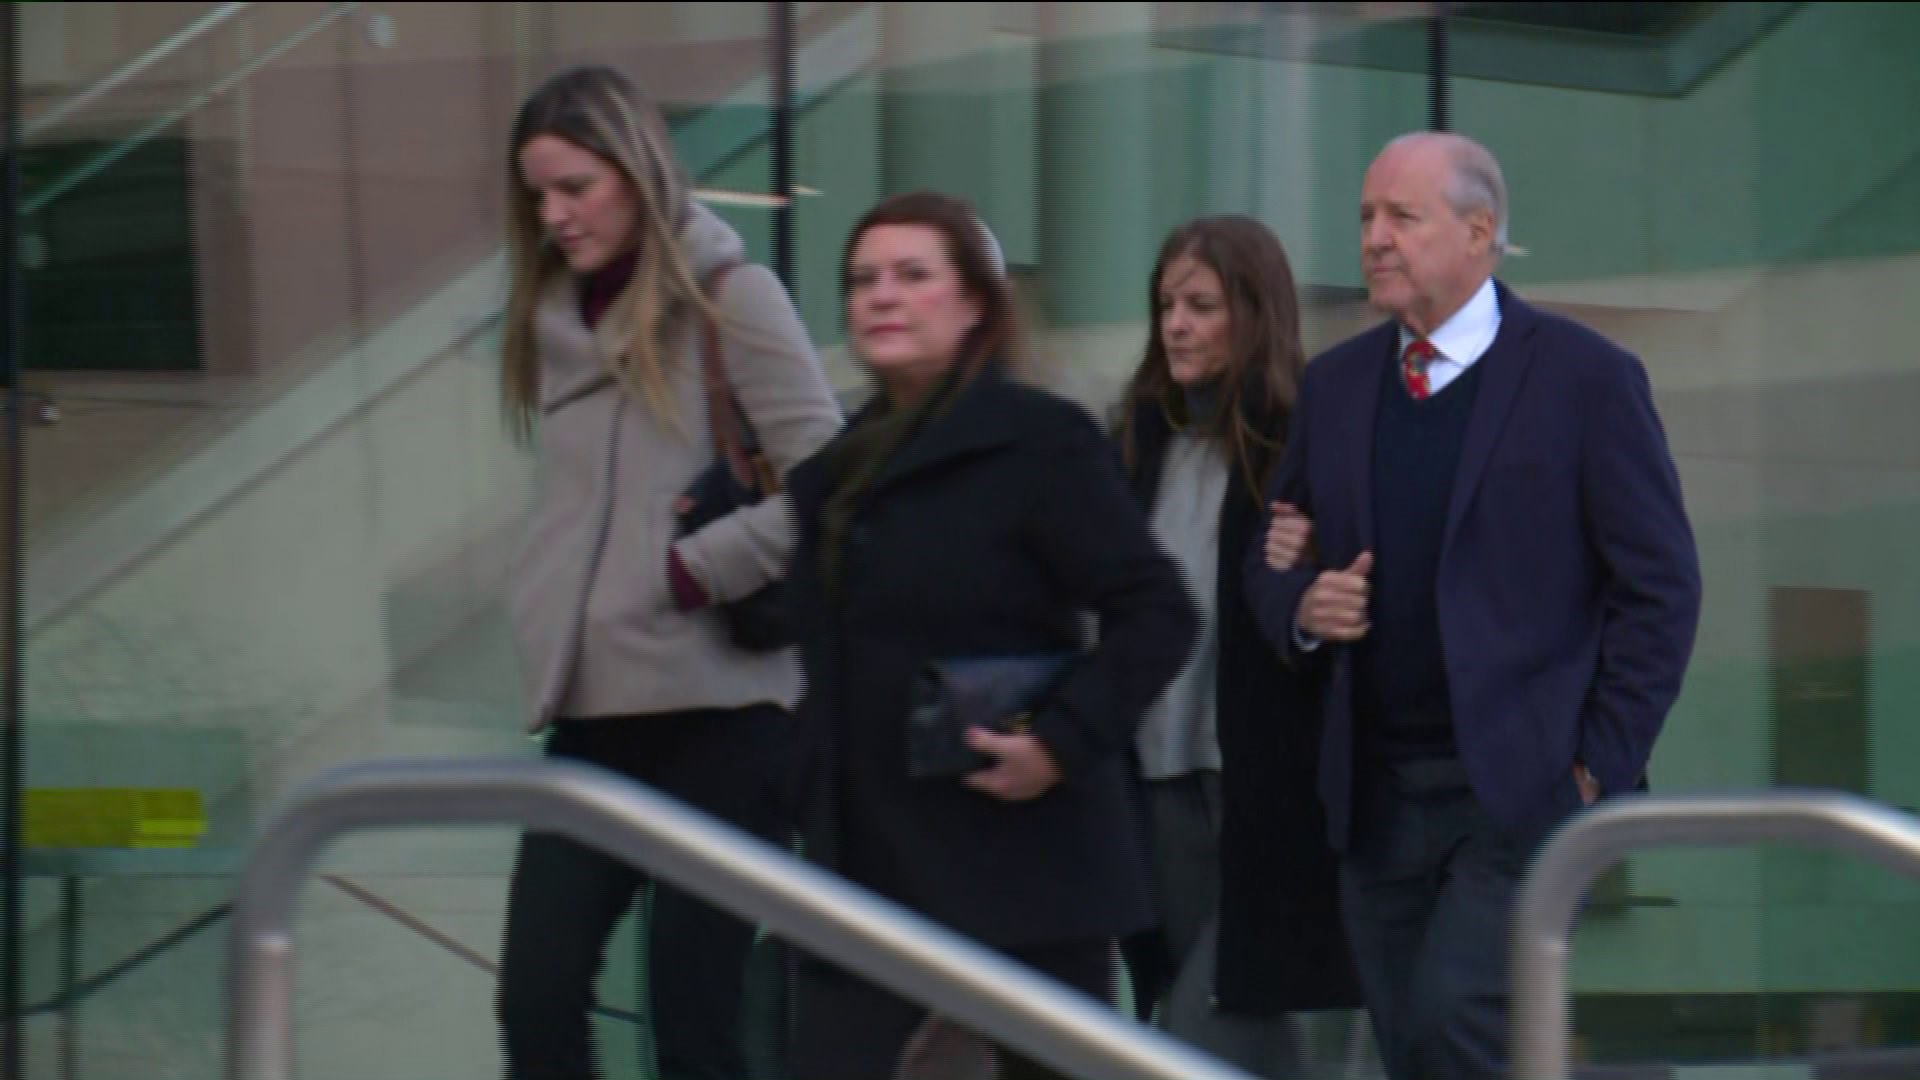 Michelle Troconis walks into Stamford Superior Court